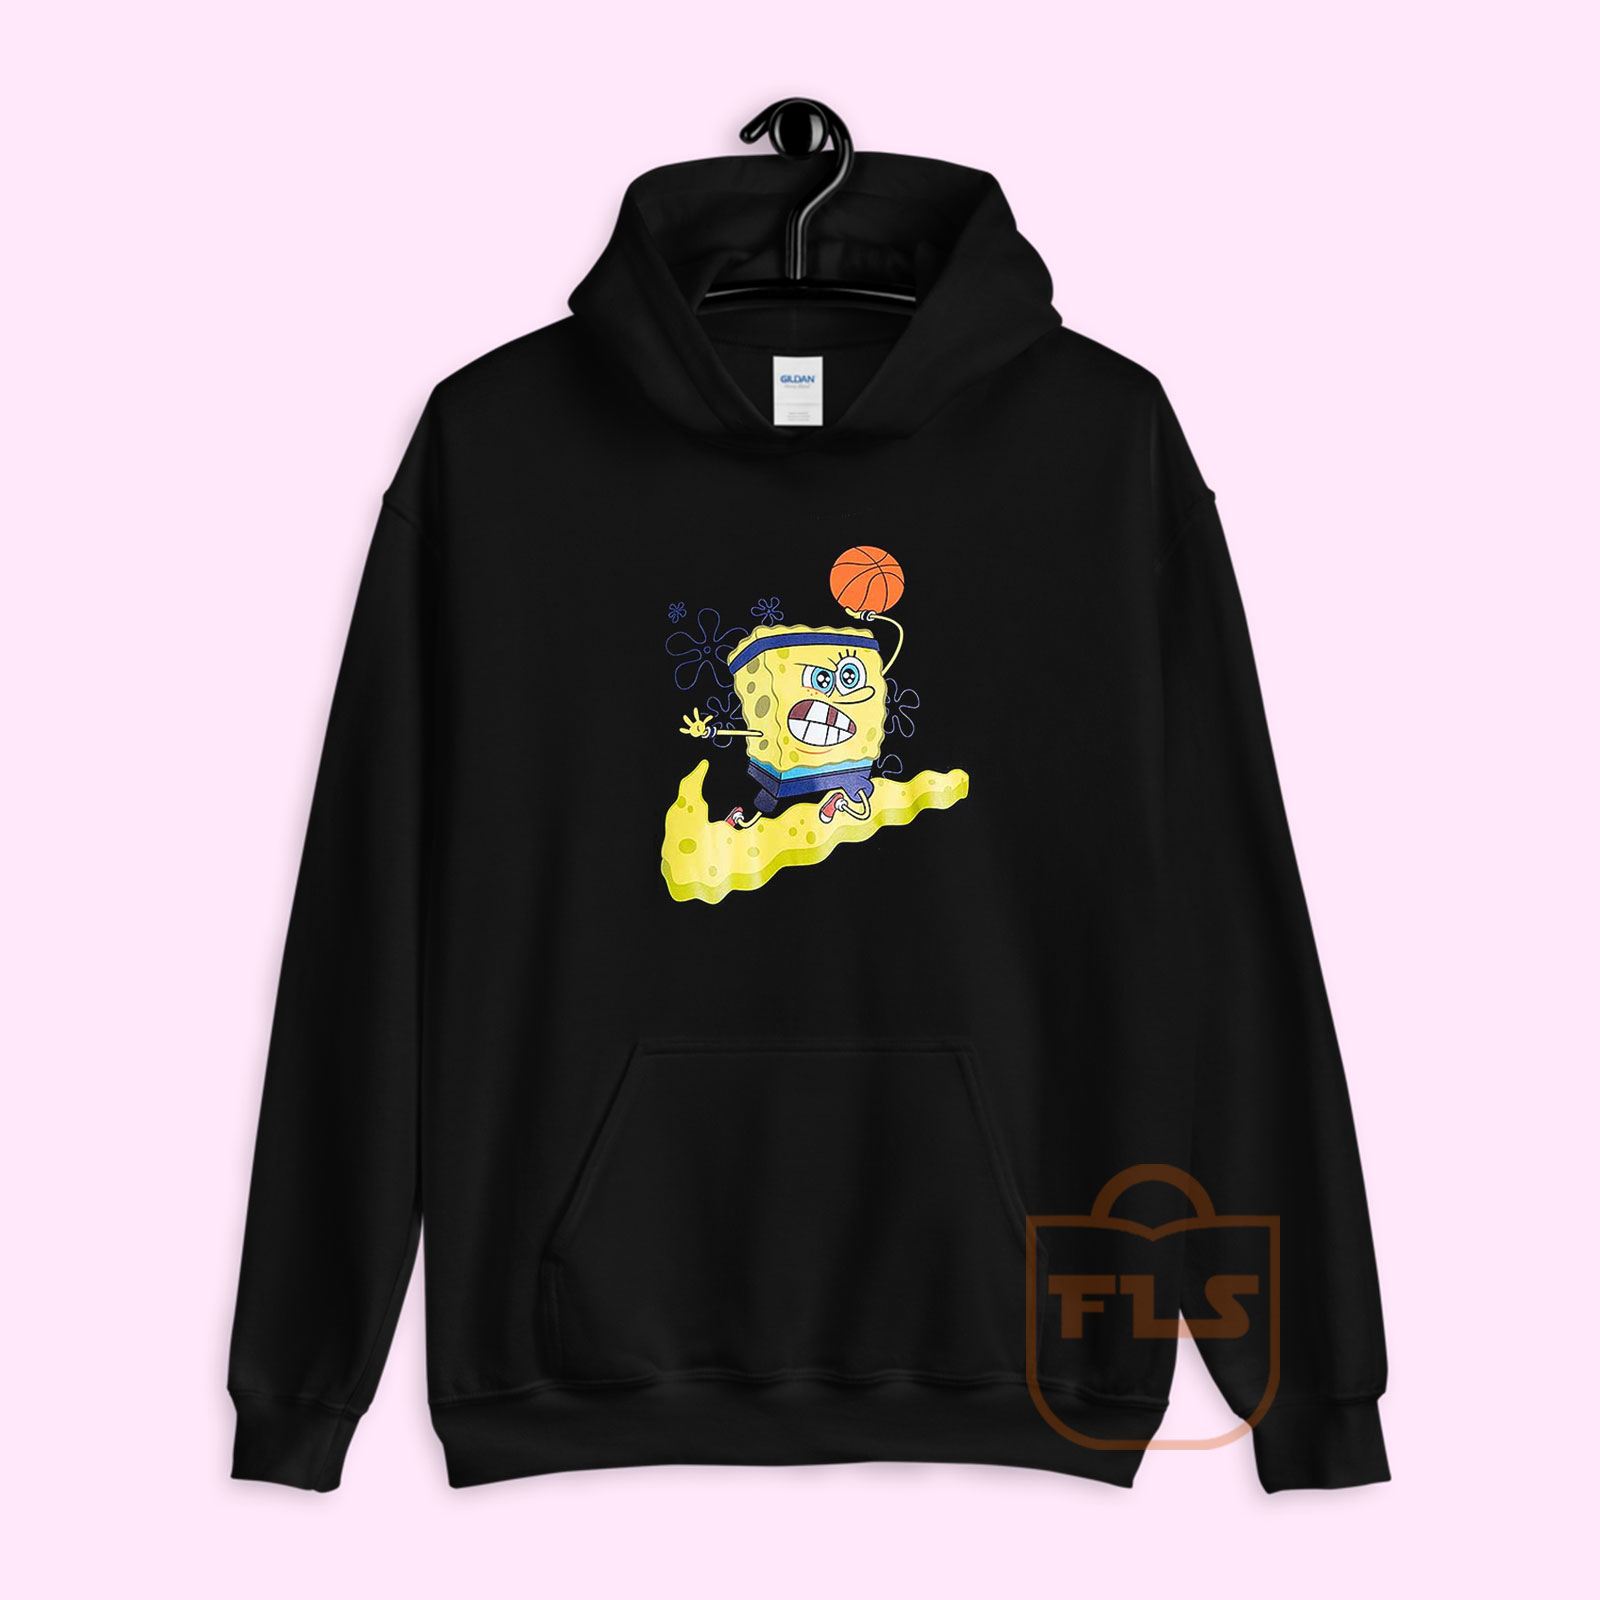 spongebob kyrie 5 hoodie